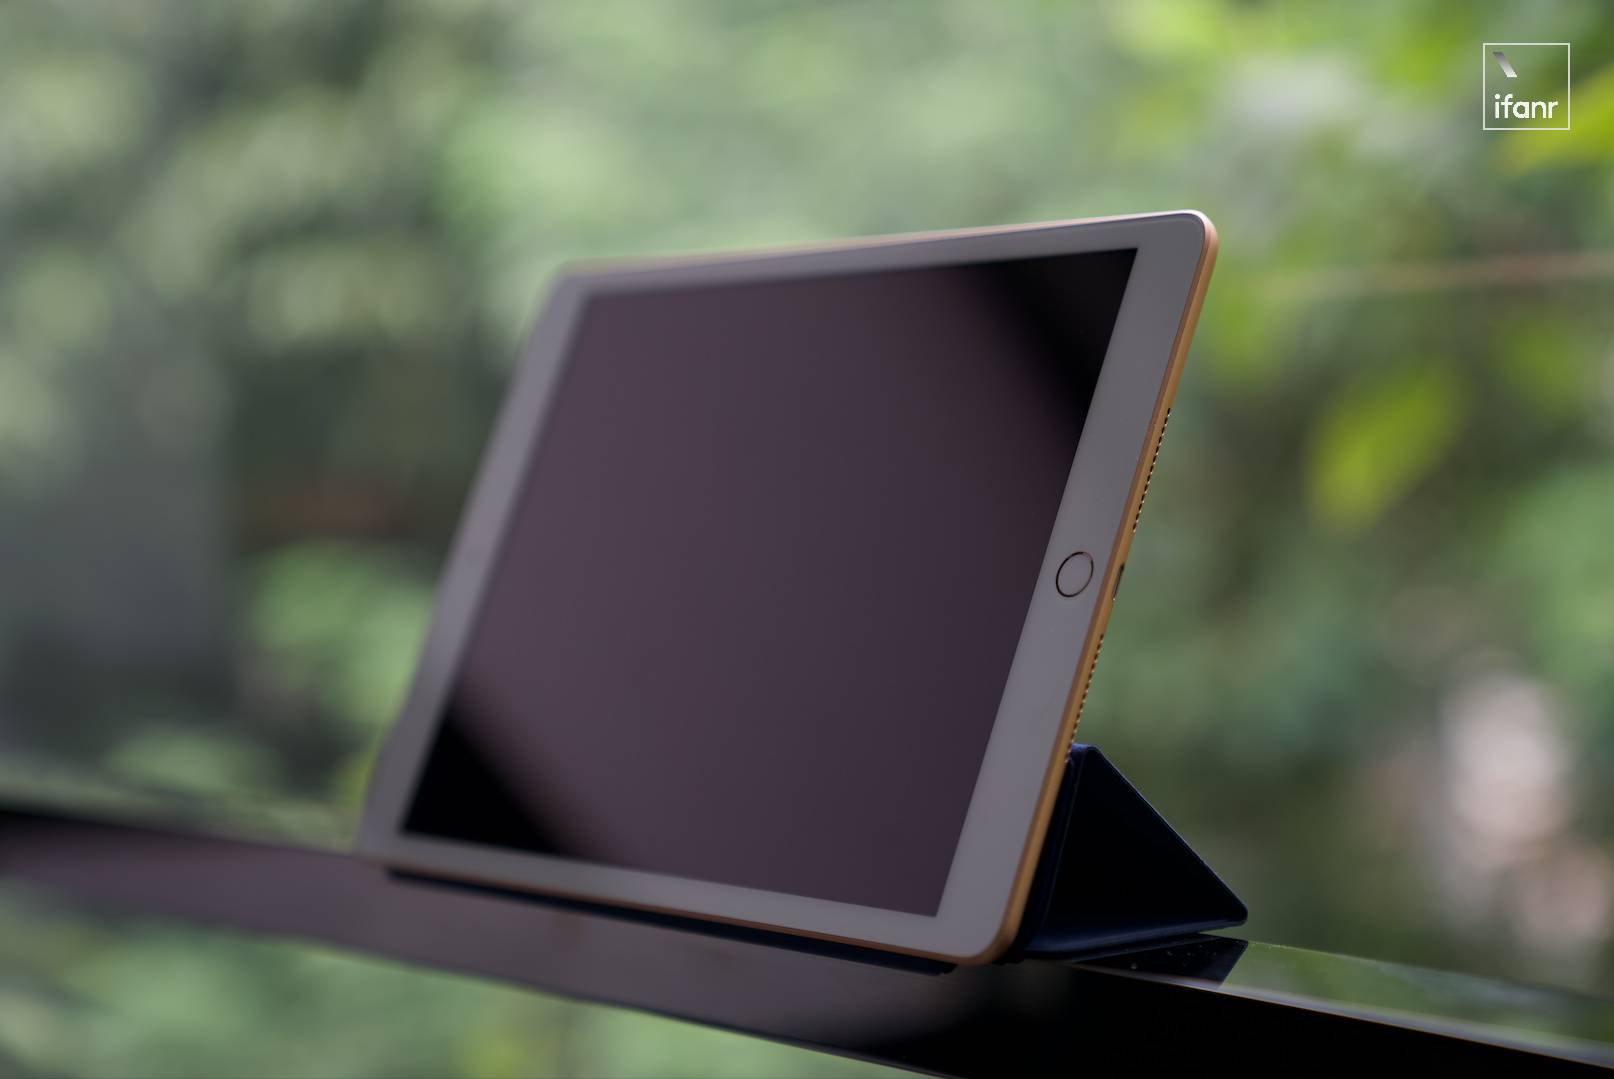 jskhjk 1 - Recensione iPad 8: anche il valore è eccezionale, potrebbe essere la prima scelta per tablet per 3000 yuan